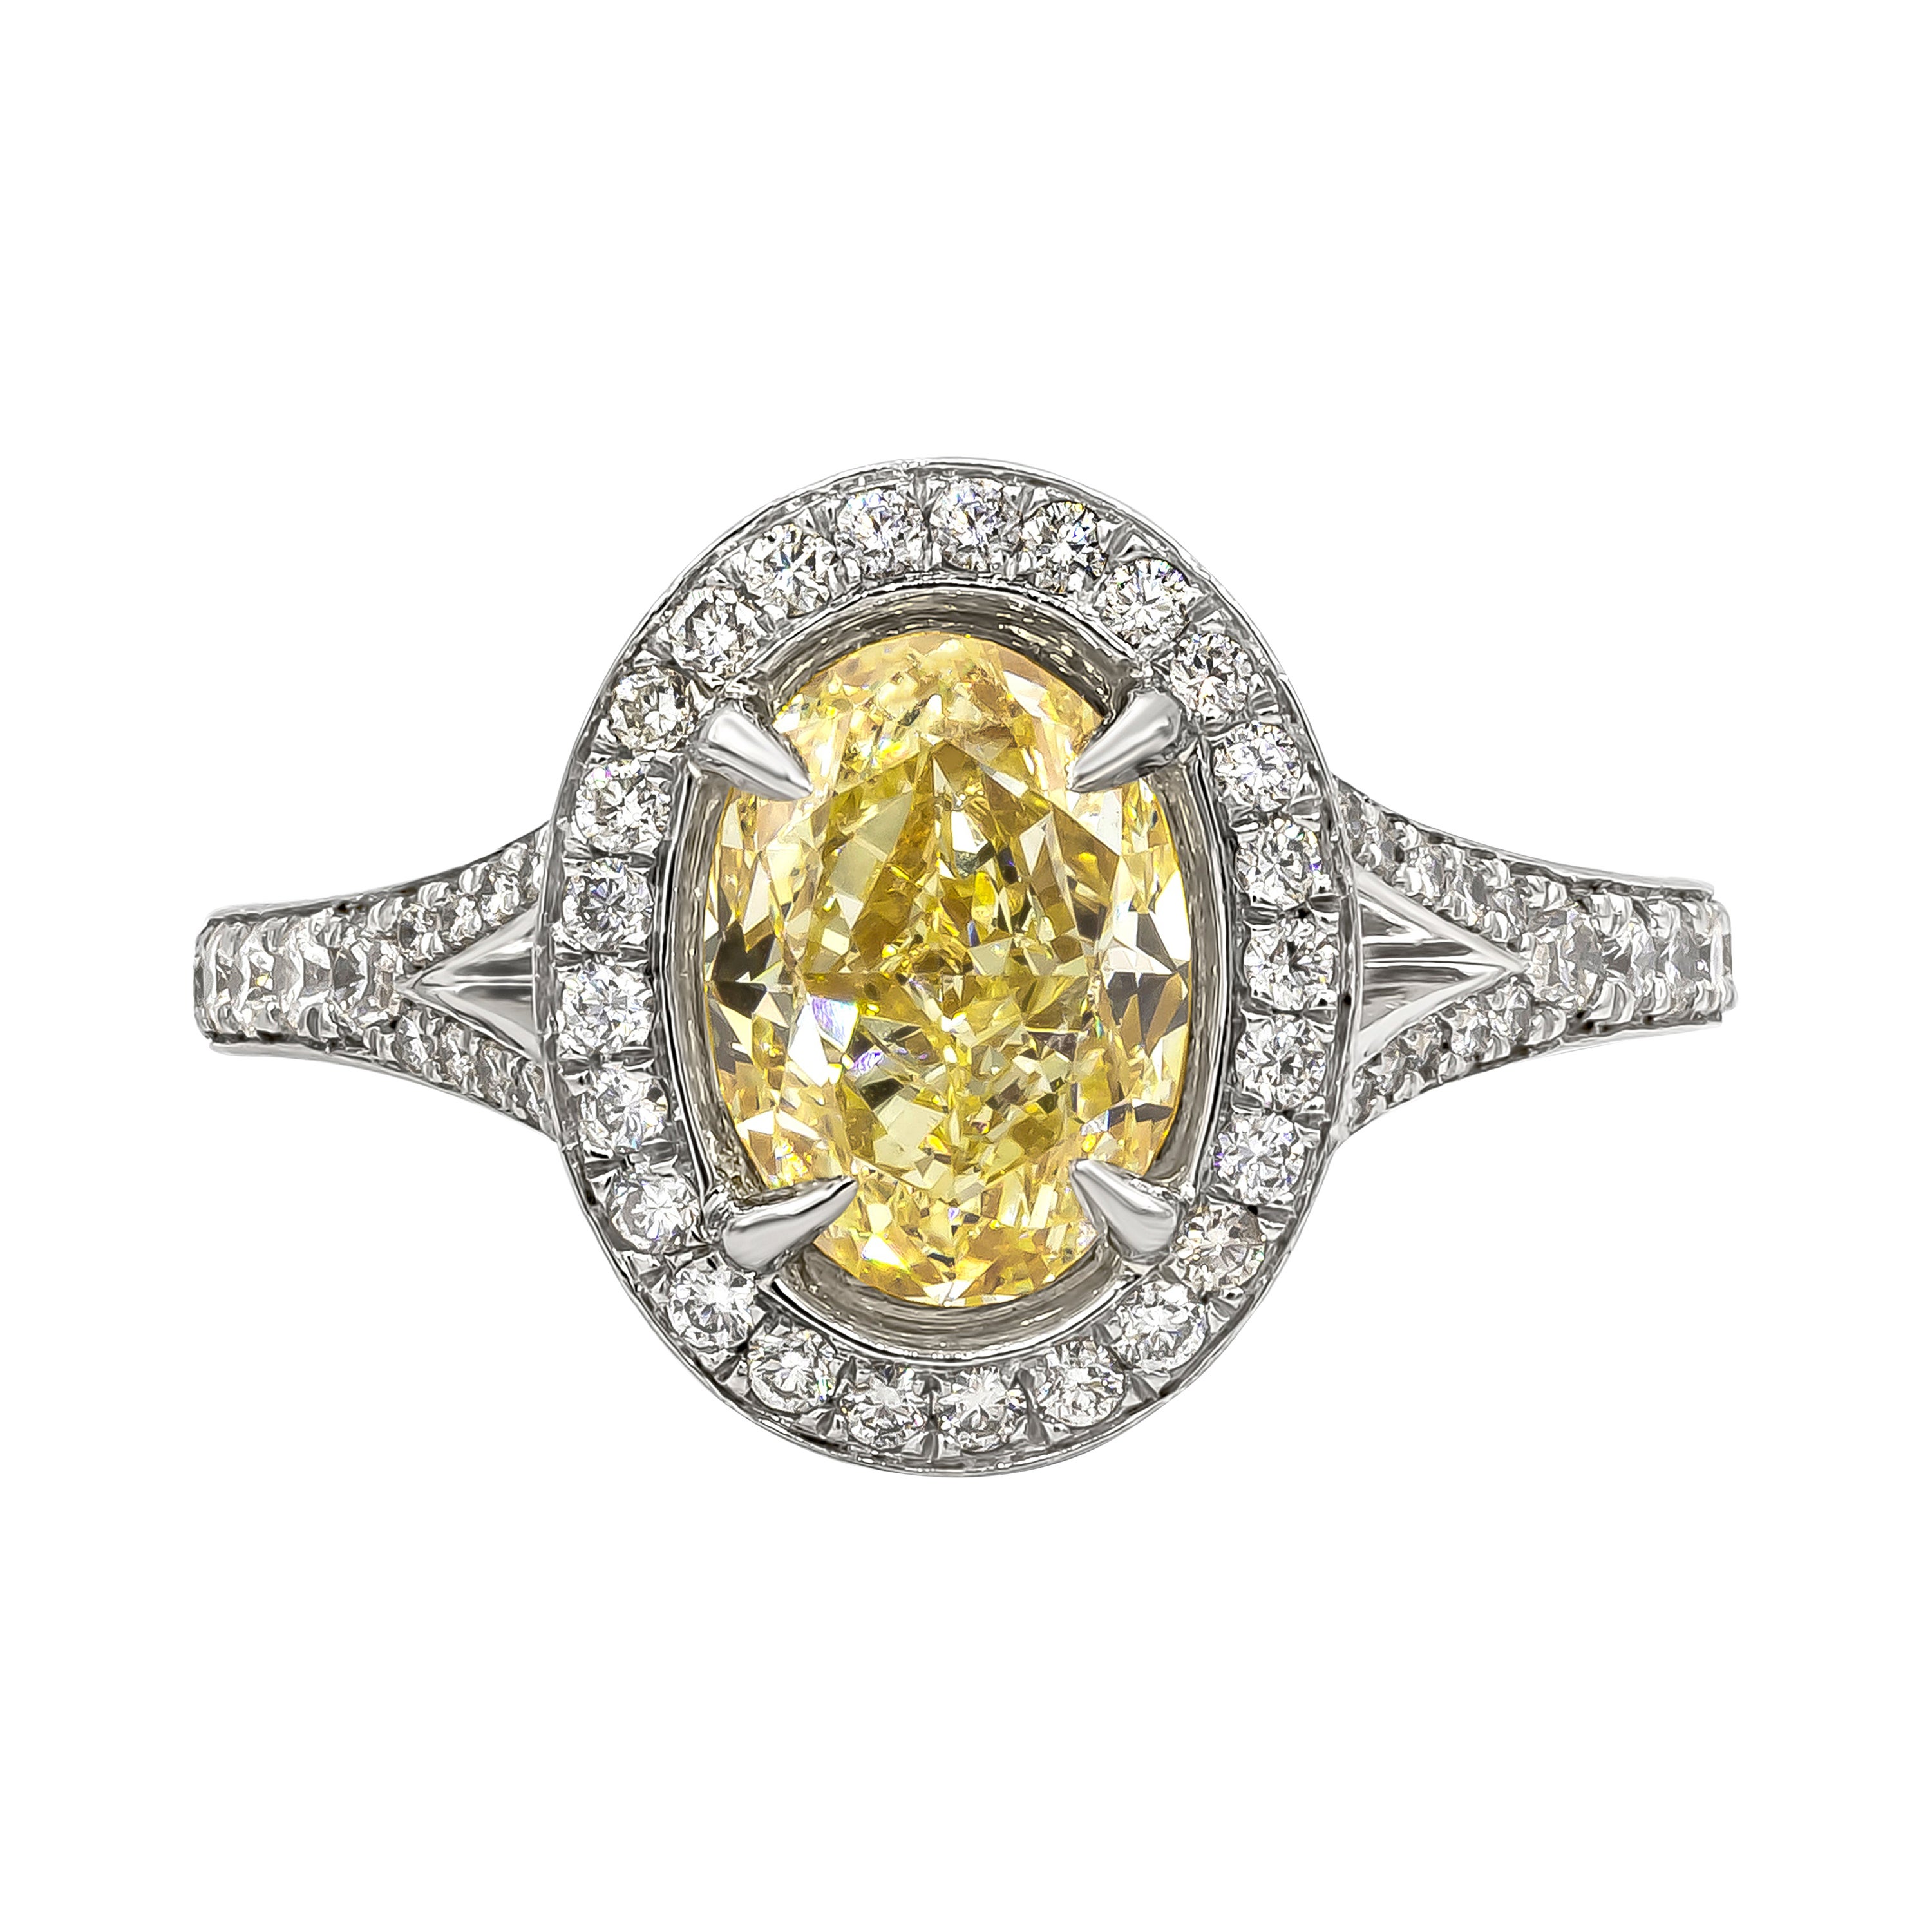 Bague de fiançailles en diamant certifié GIA de 1.76 carats, taille ovale, de couleur jaune clair fantaisie